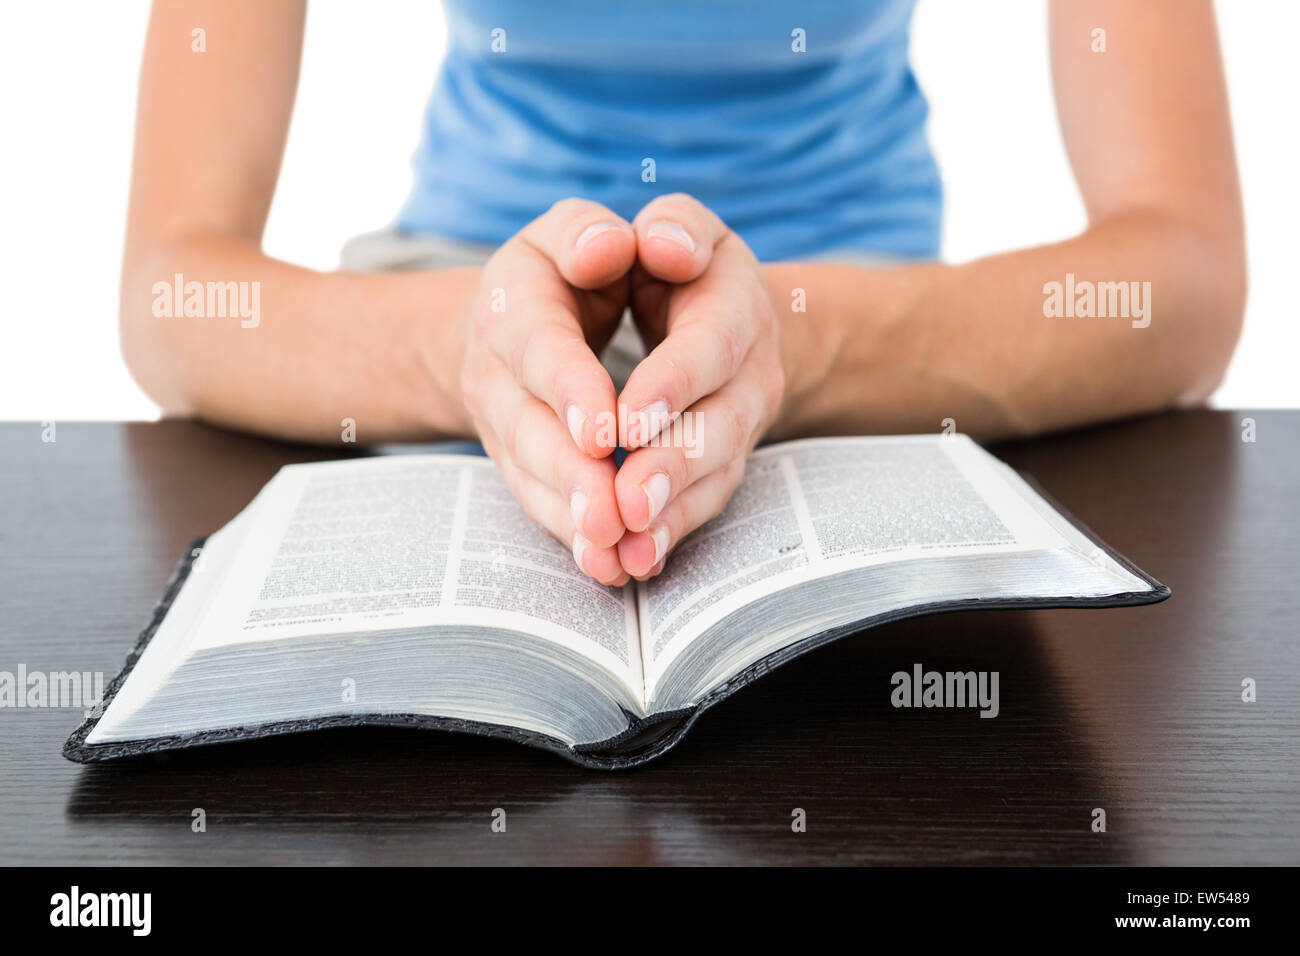 Woman praying while reading bible Stock Photo